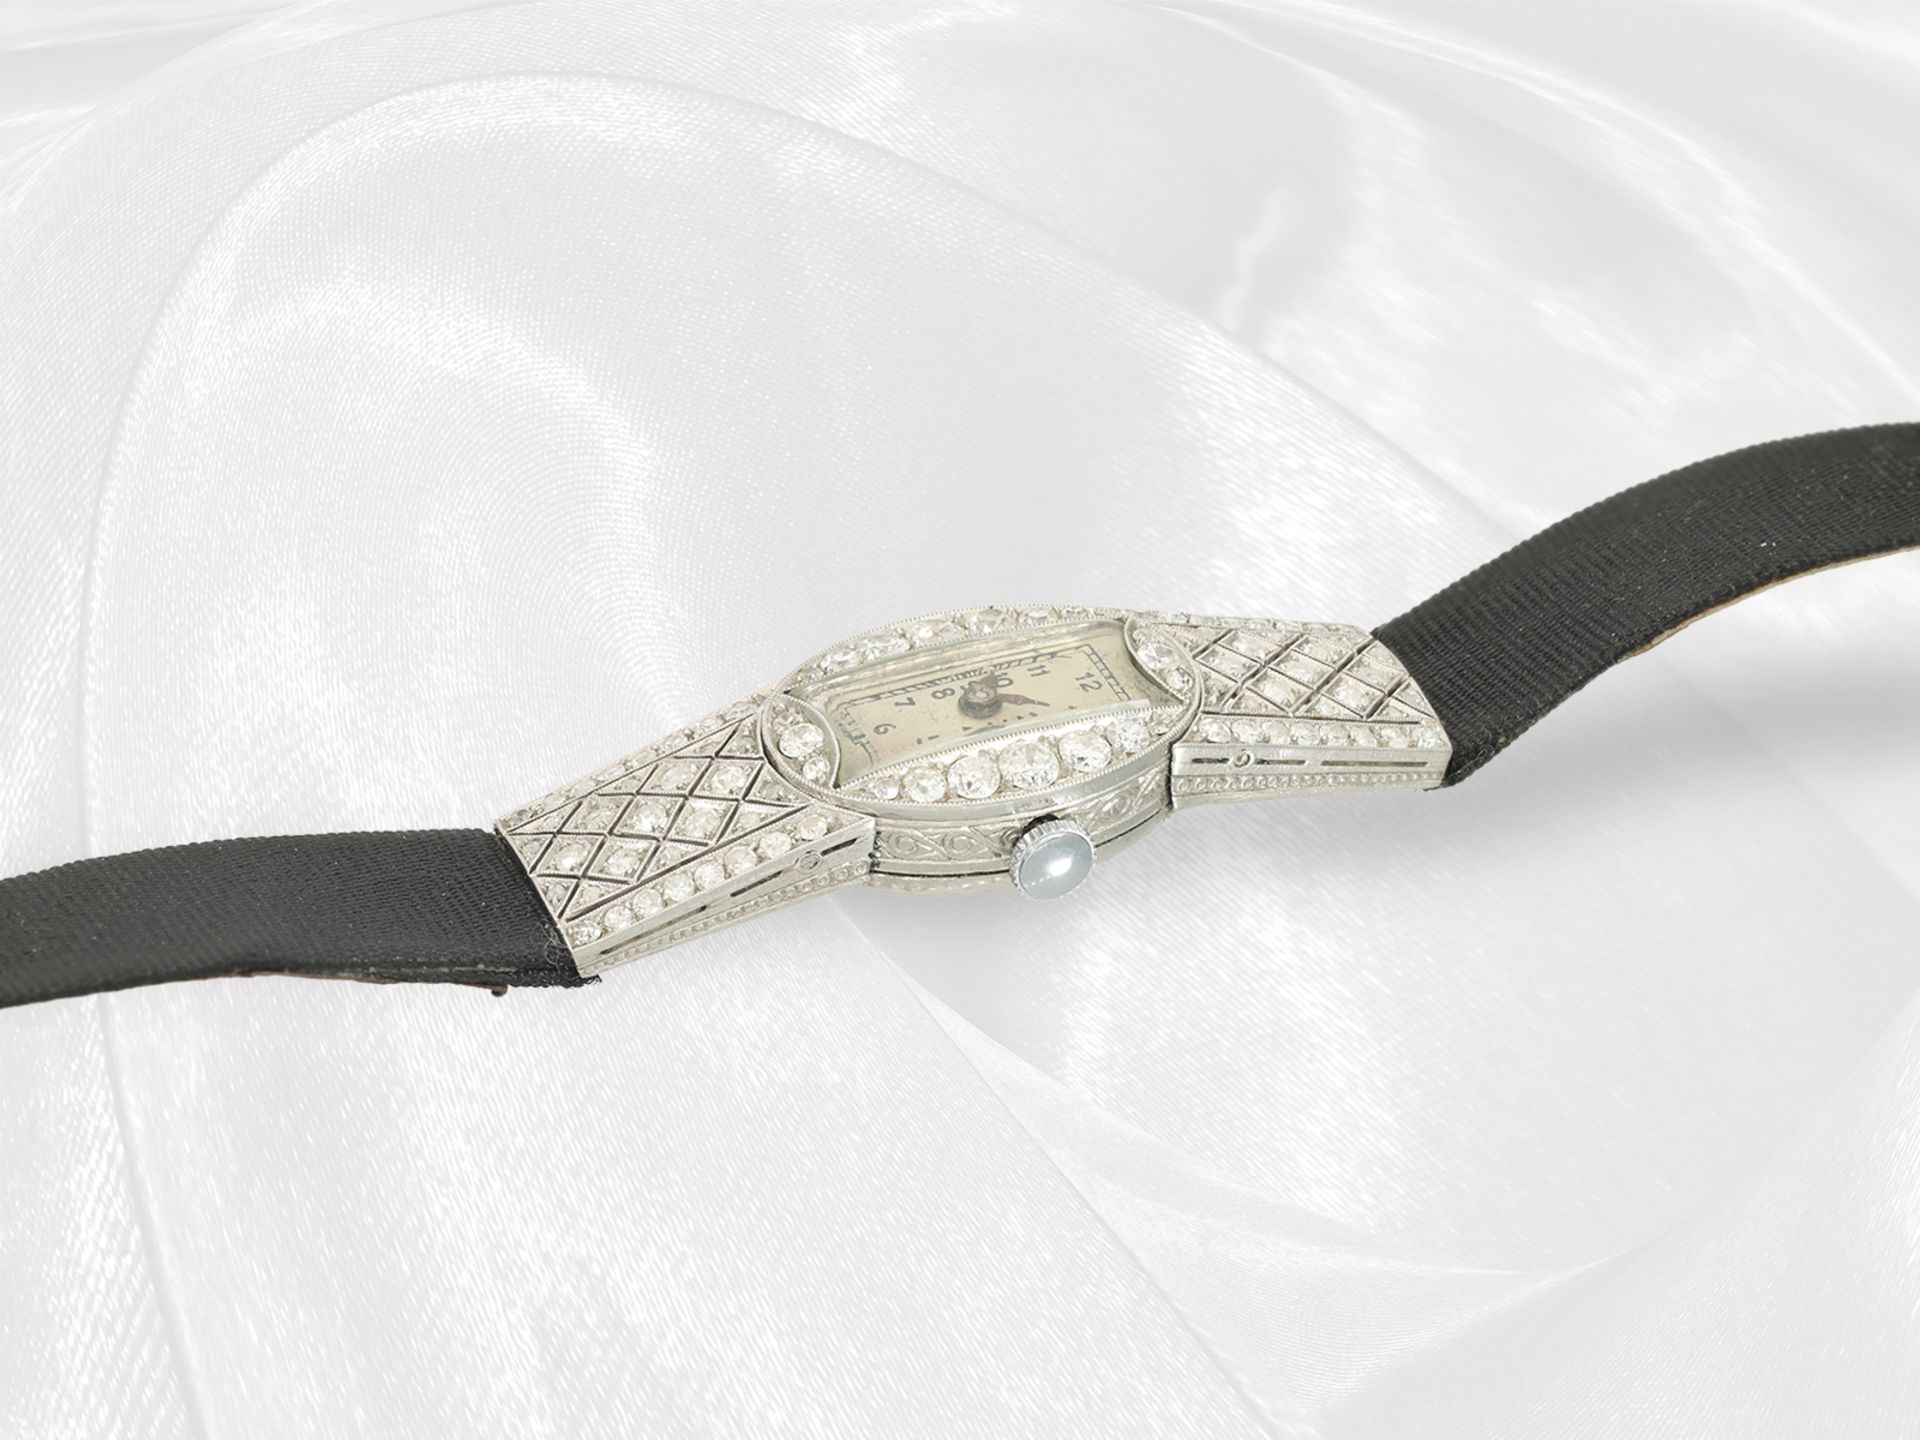 Armbanduhr: attraktive Art déco Damenuhr aus Platin mit Diamantbesatz, ca. 2ct, ca. 1920 - Bild 4 aus 4